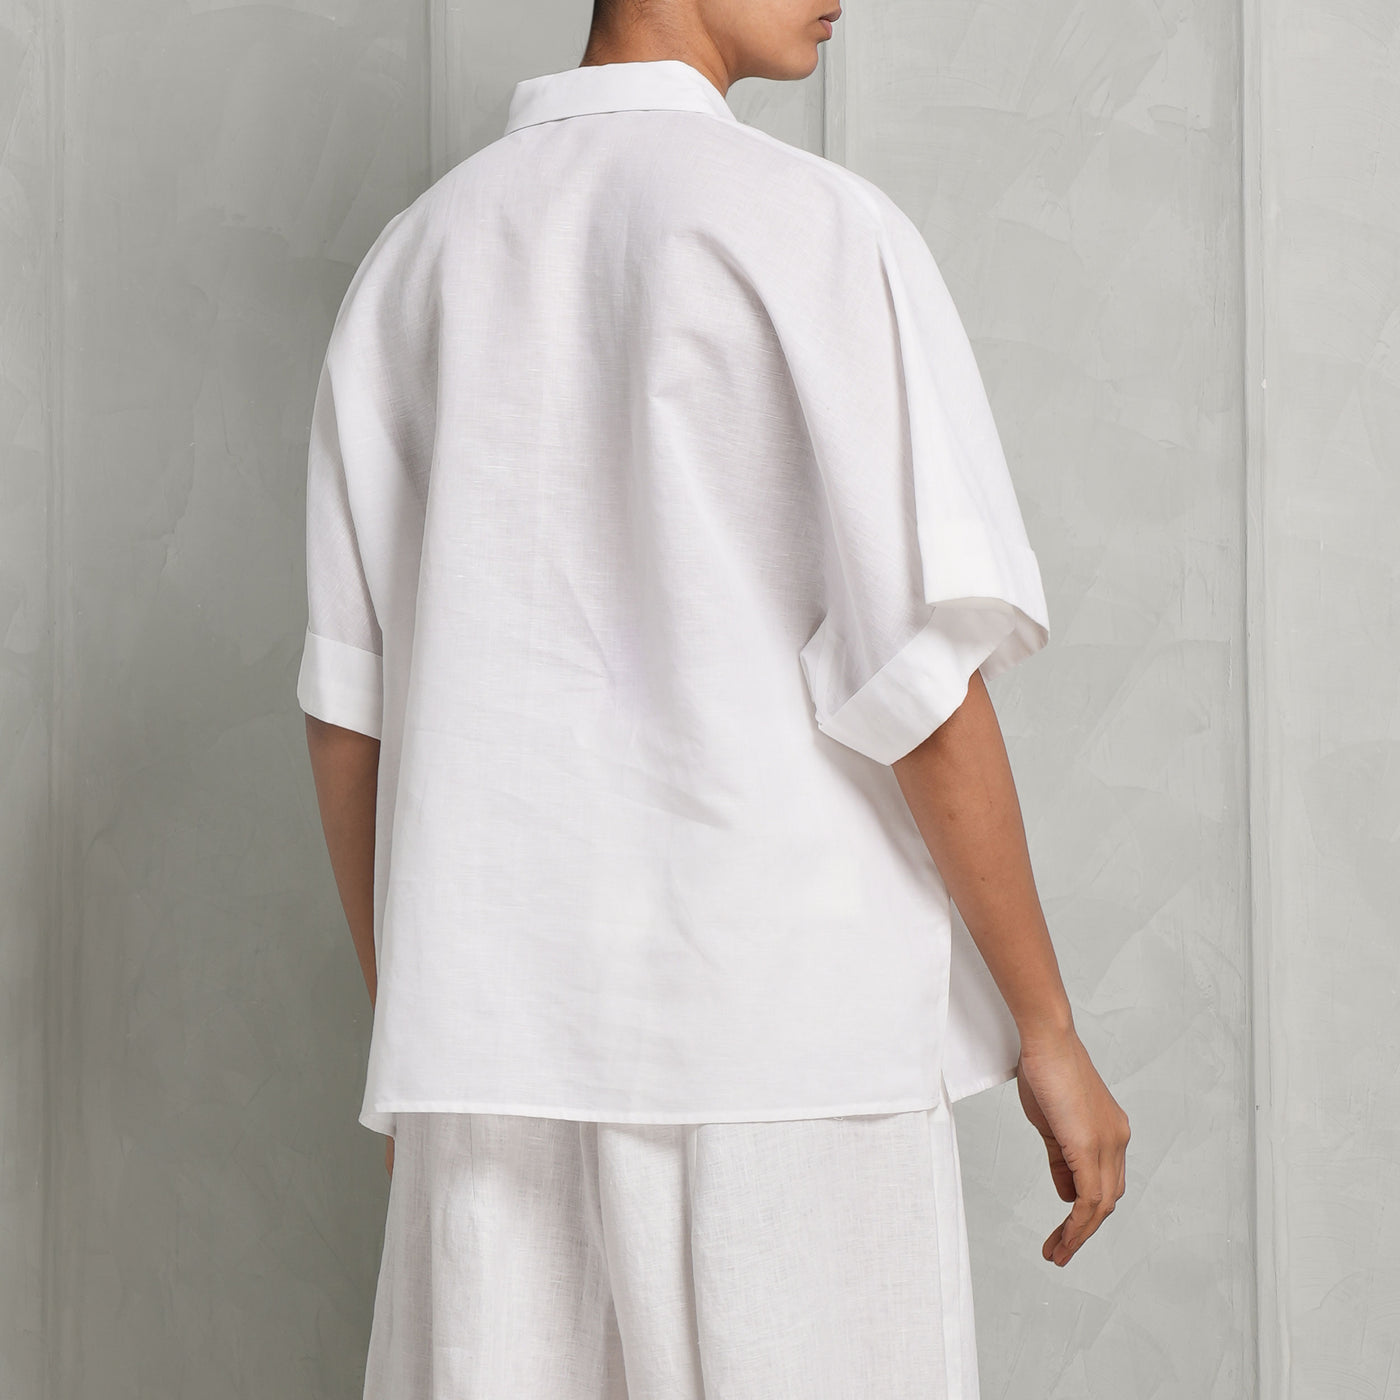 VARANA kimono sleeve white shirt